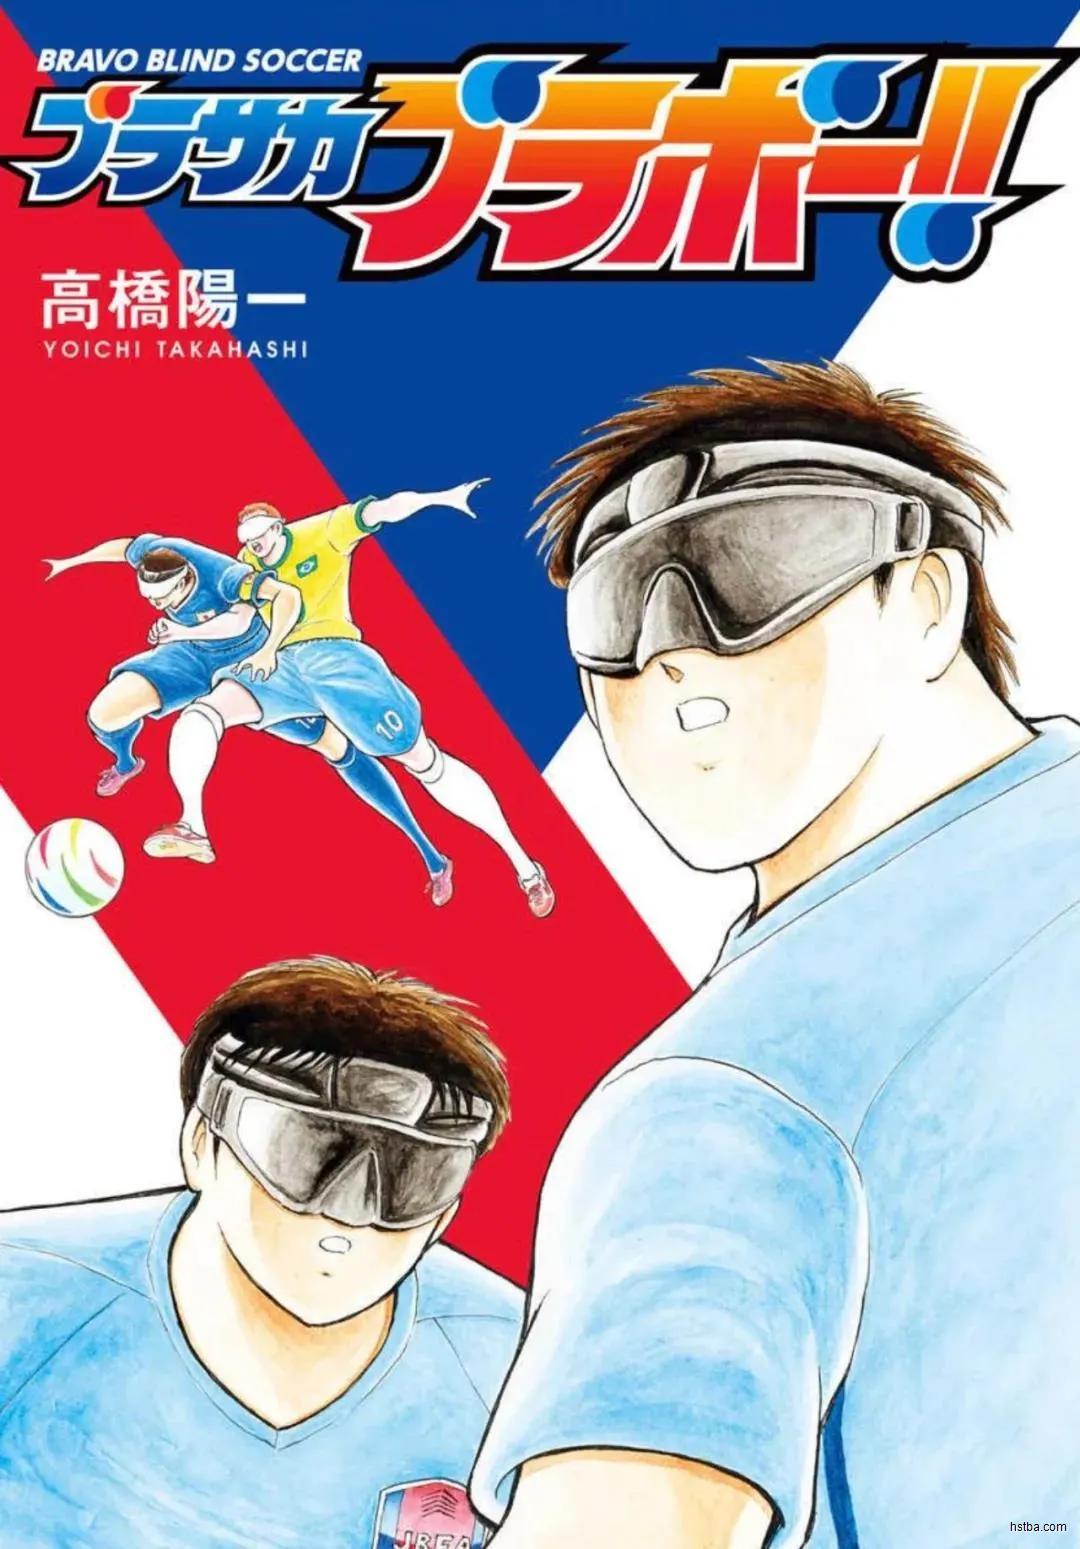 中国盲人足球队的奥运故事，比盲人版《足球小将》热血一万倍